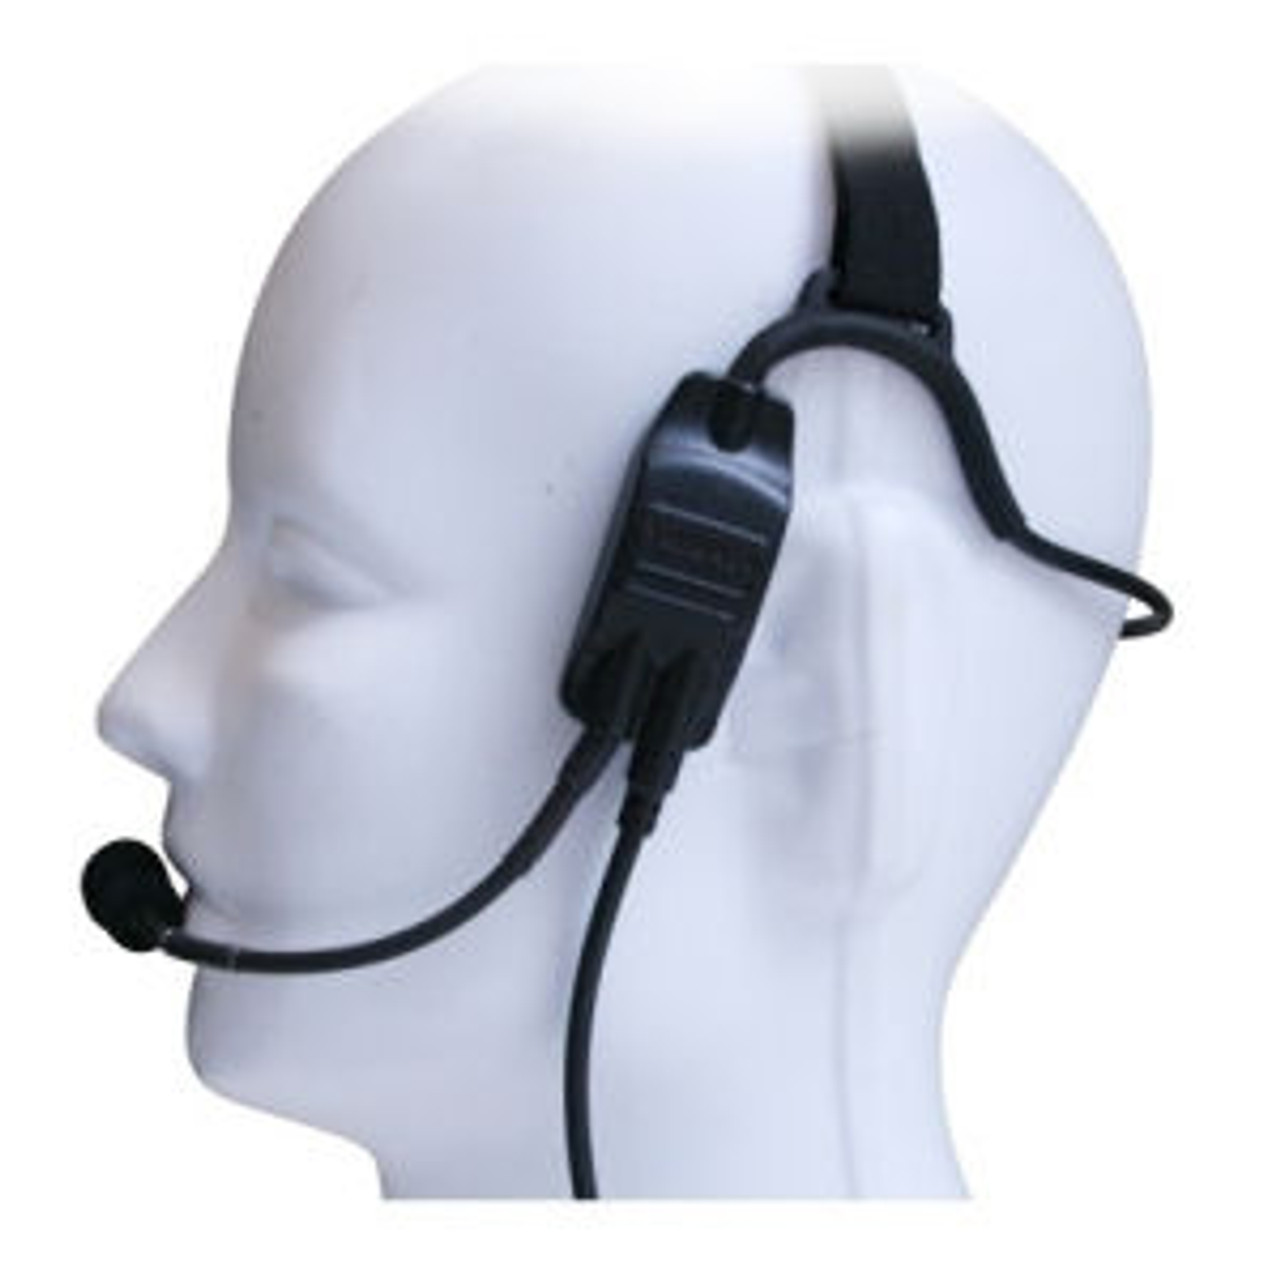 Kenwood TK-2302 Temple Transducer Headset